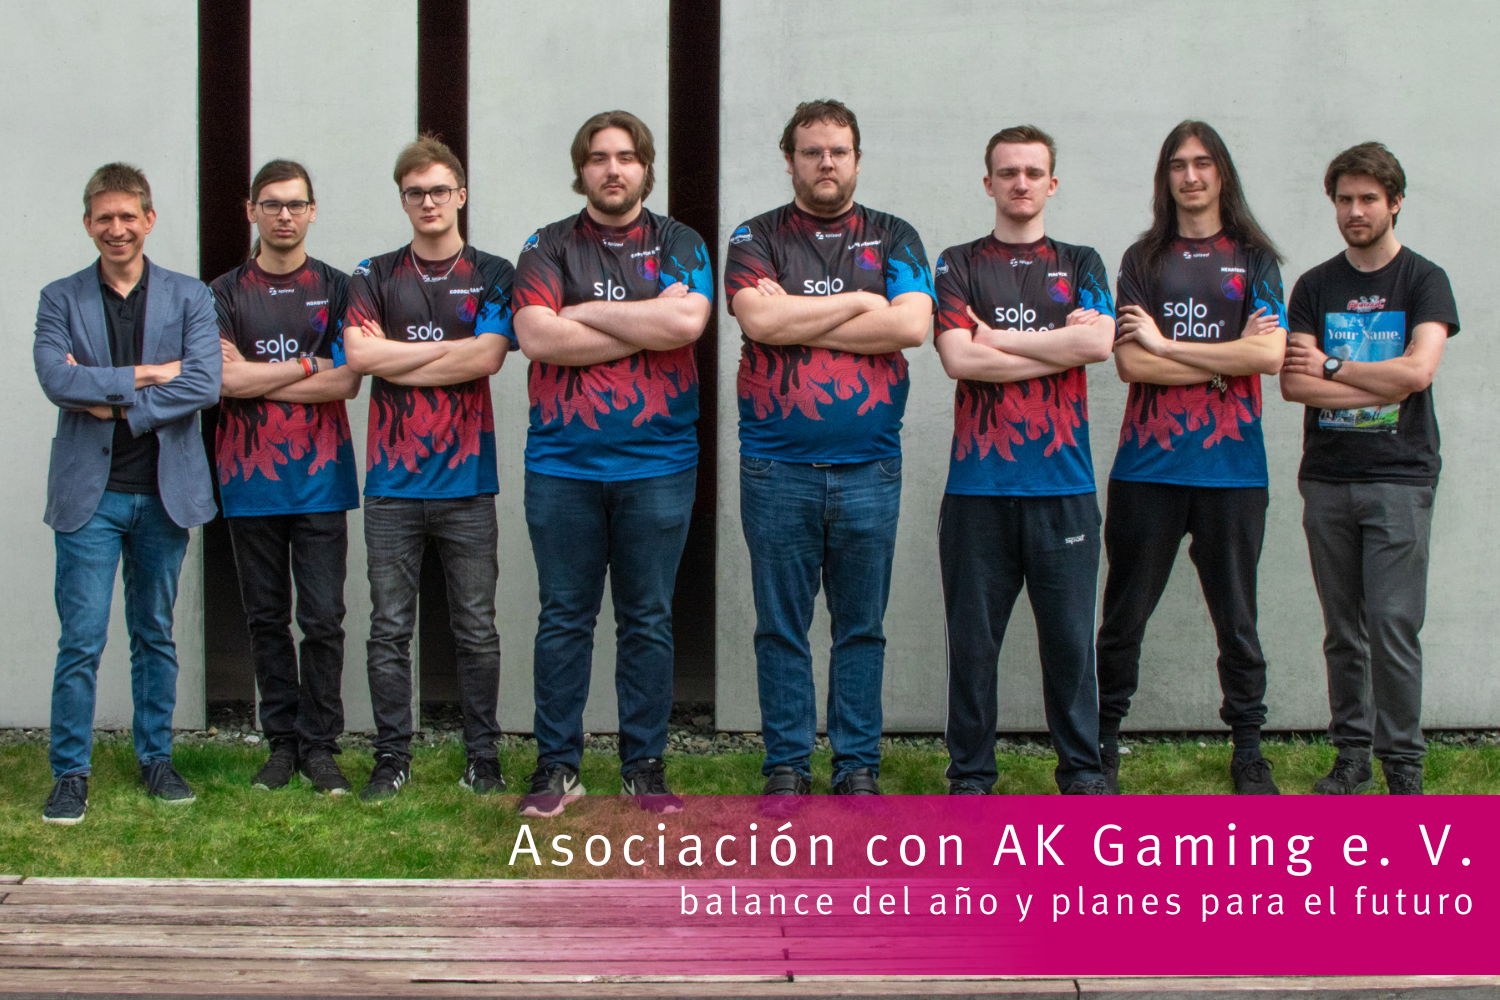 Asociación con AK Gaming e. V.: balance del año y planes para el futuro